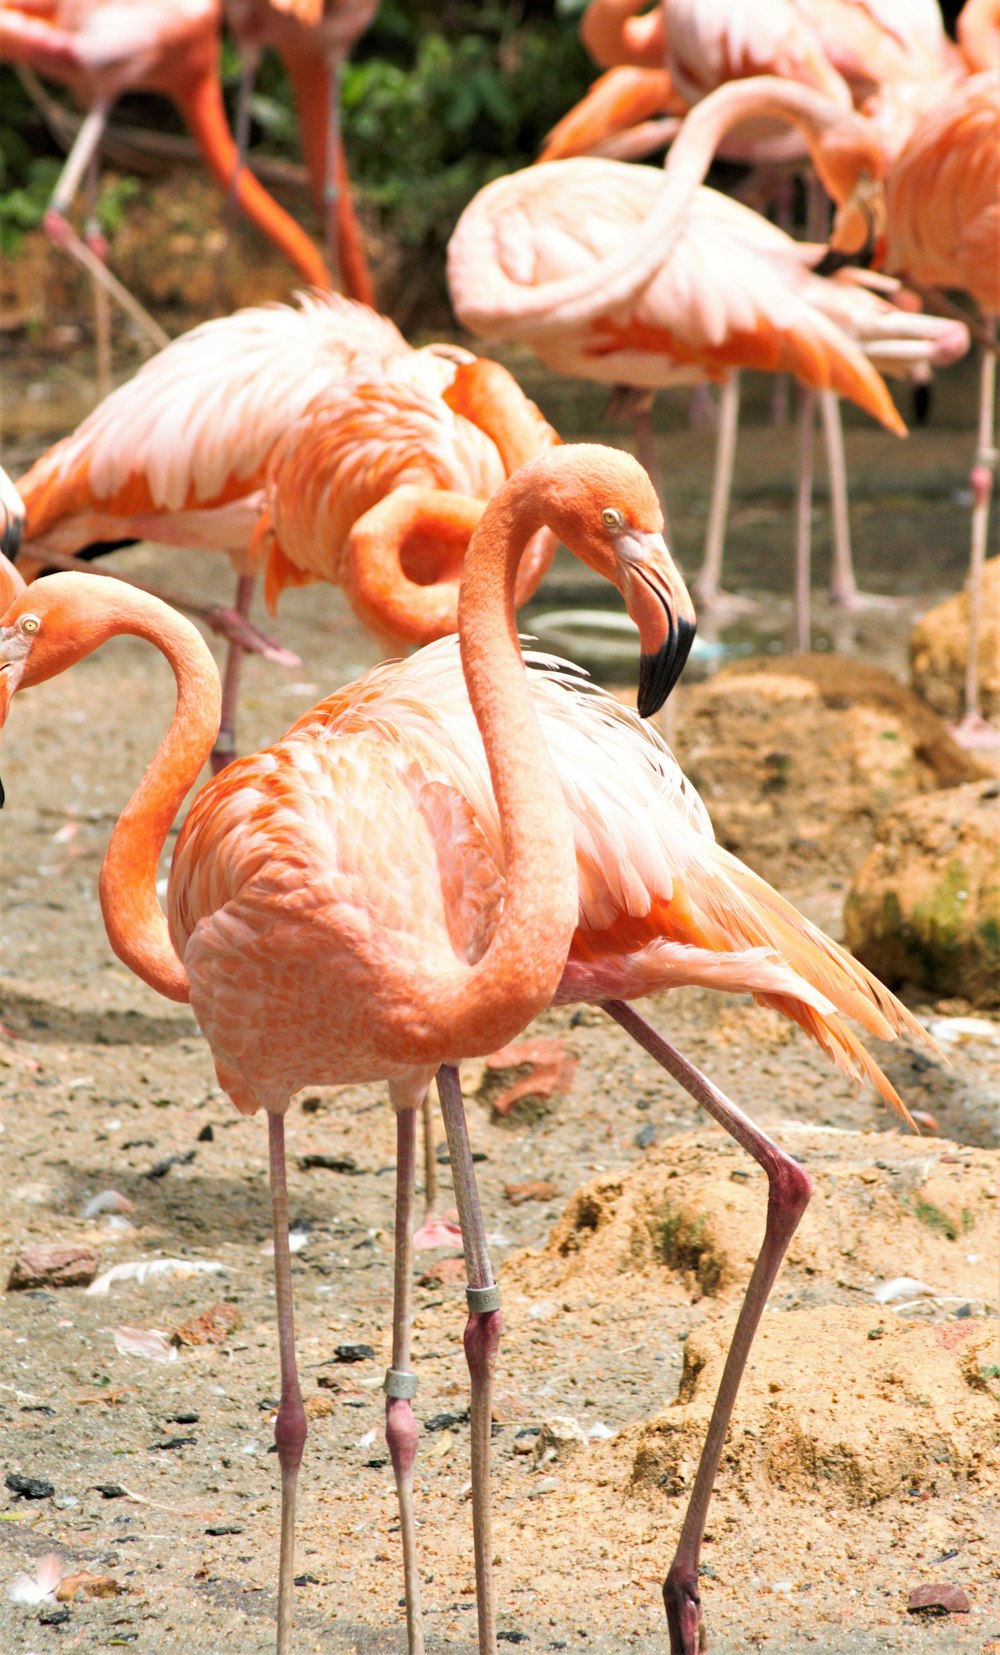 pink flamingos on brown soil during daytime